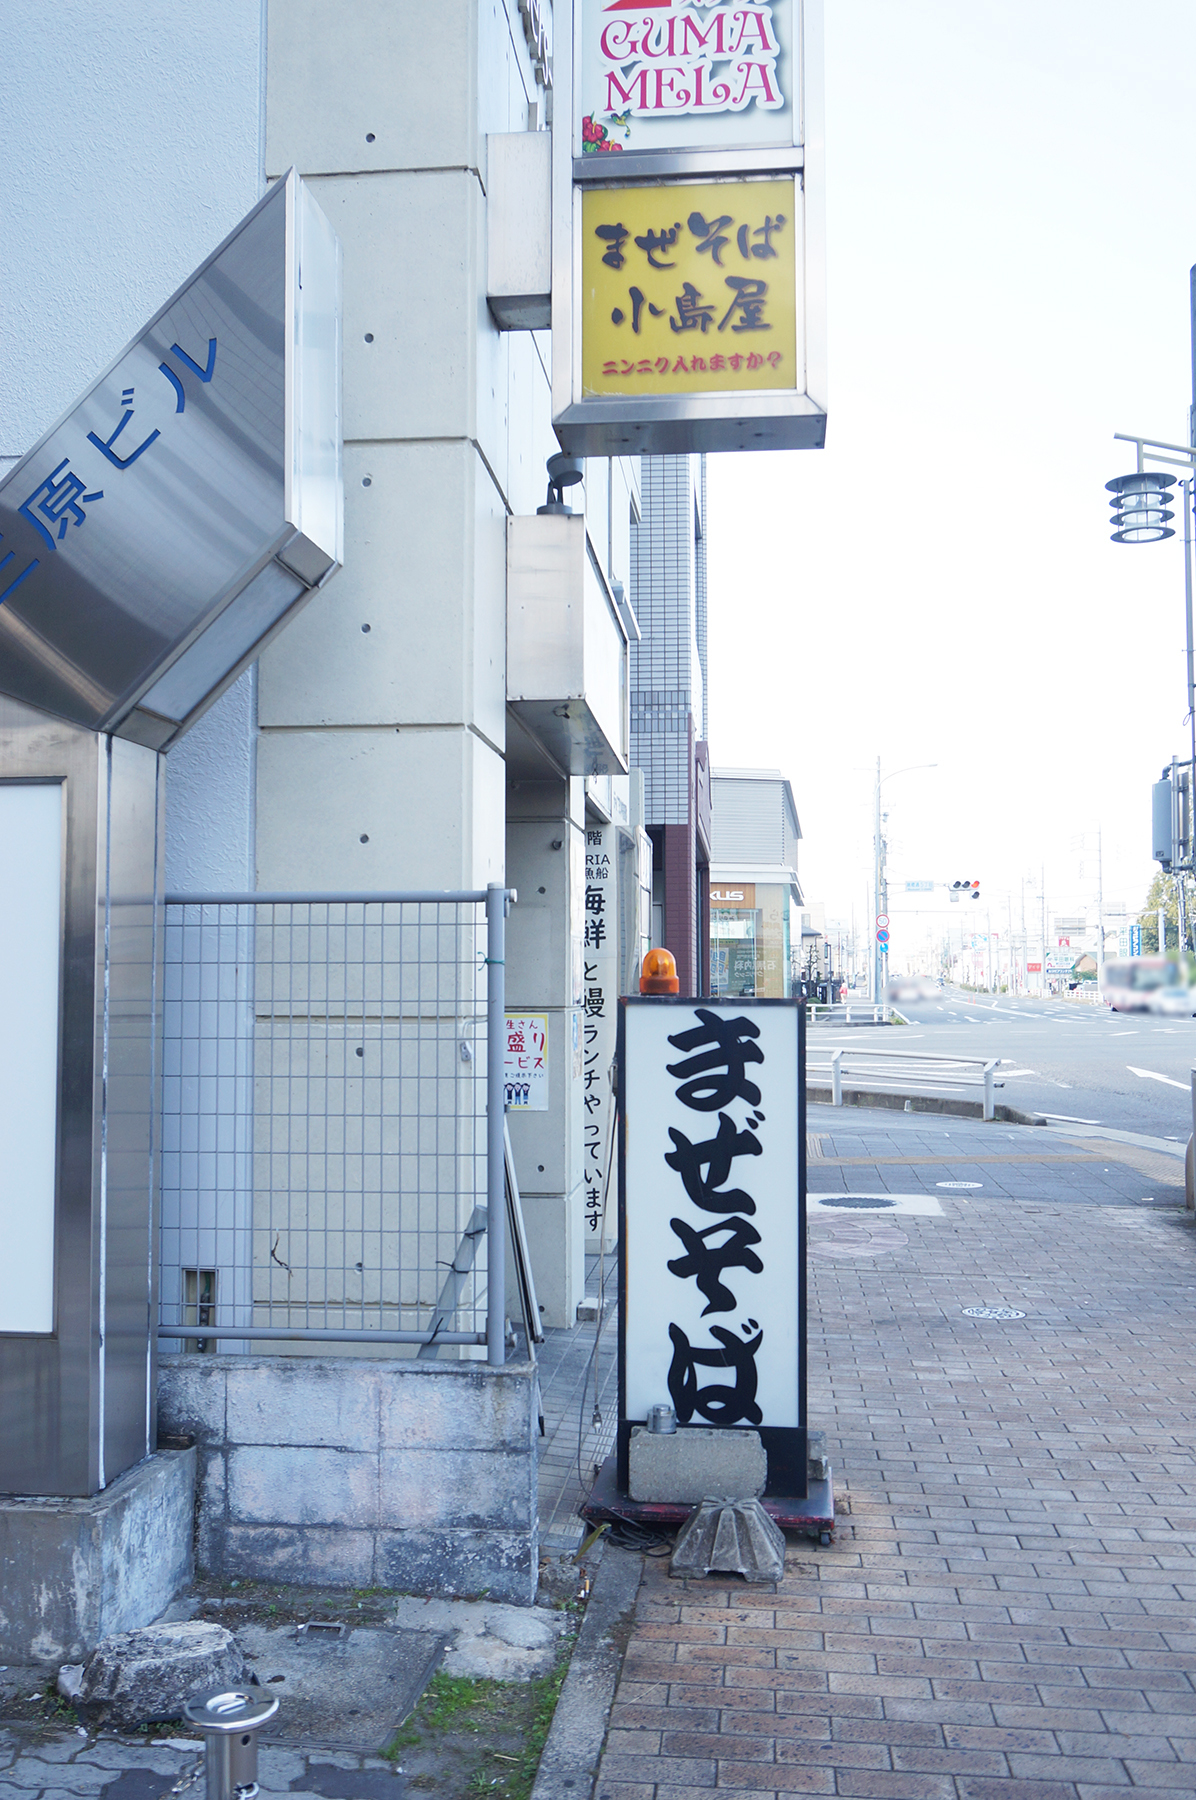 19号線の交差点のすぐそばにあります。ライターの足でJR春日井駅北口から歩いて20分でした。